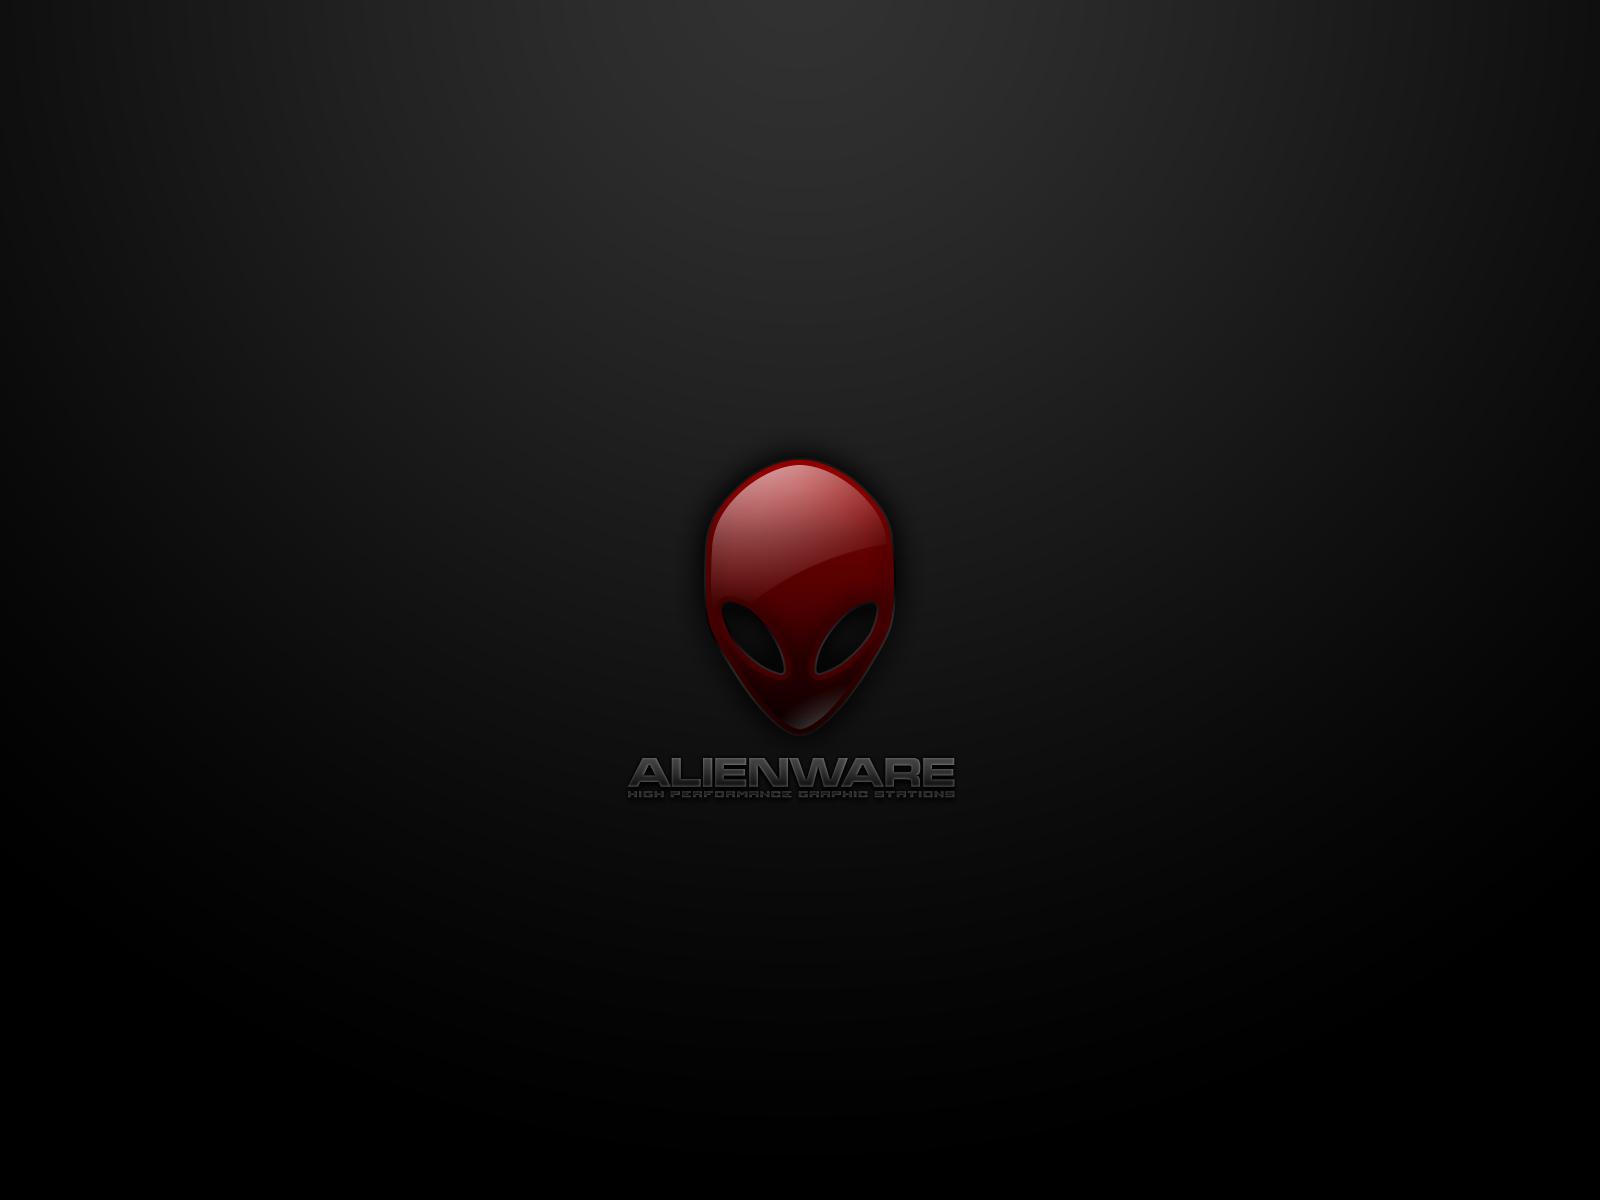 alienware wallpaper red